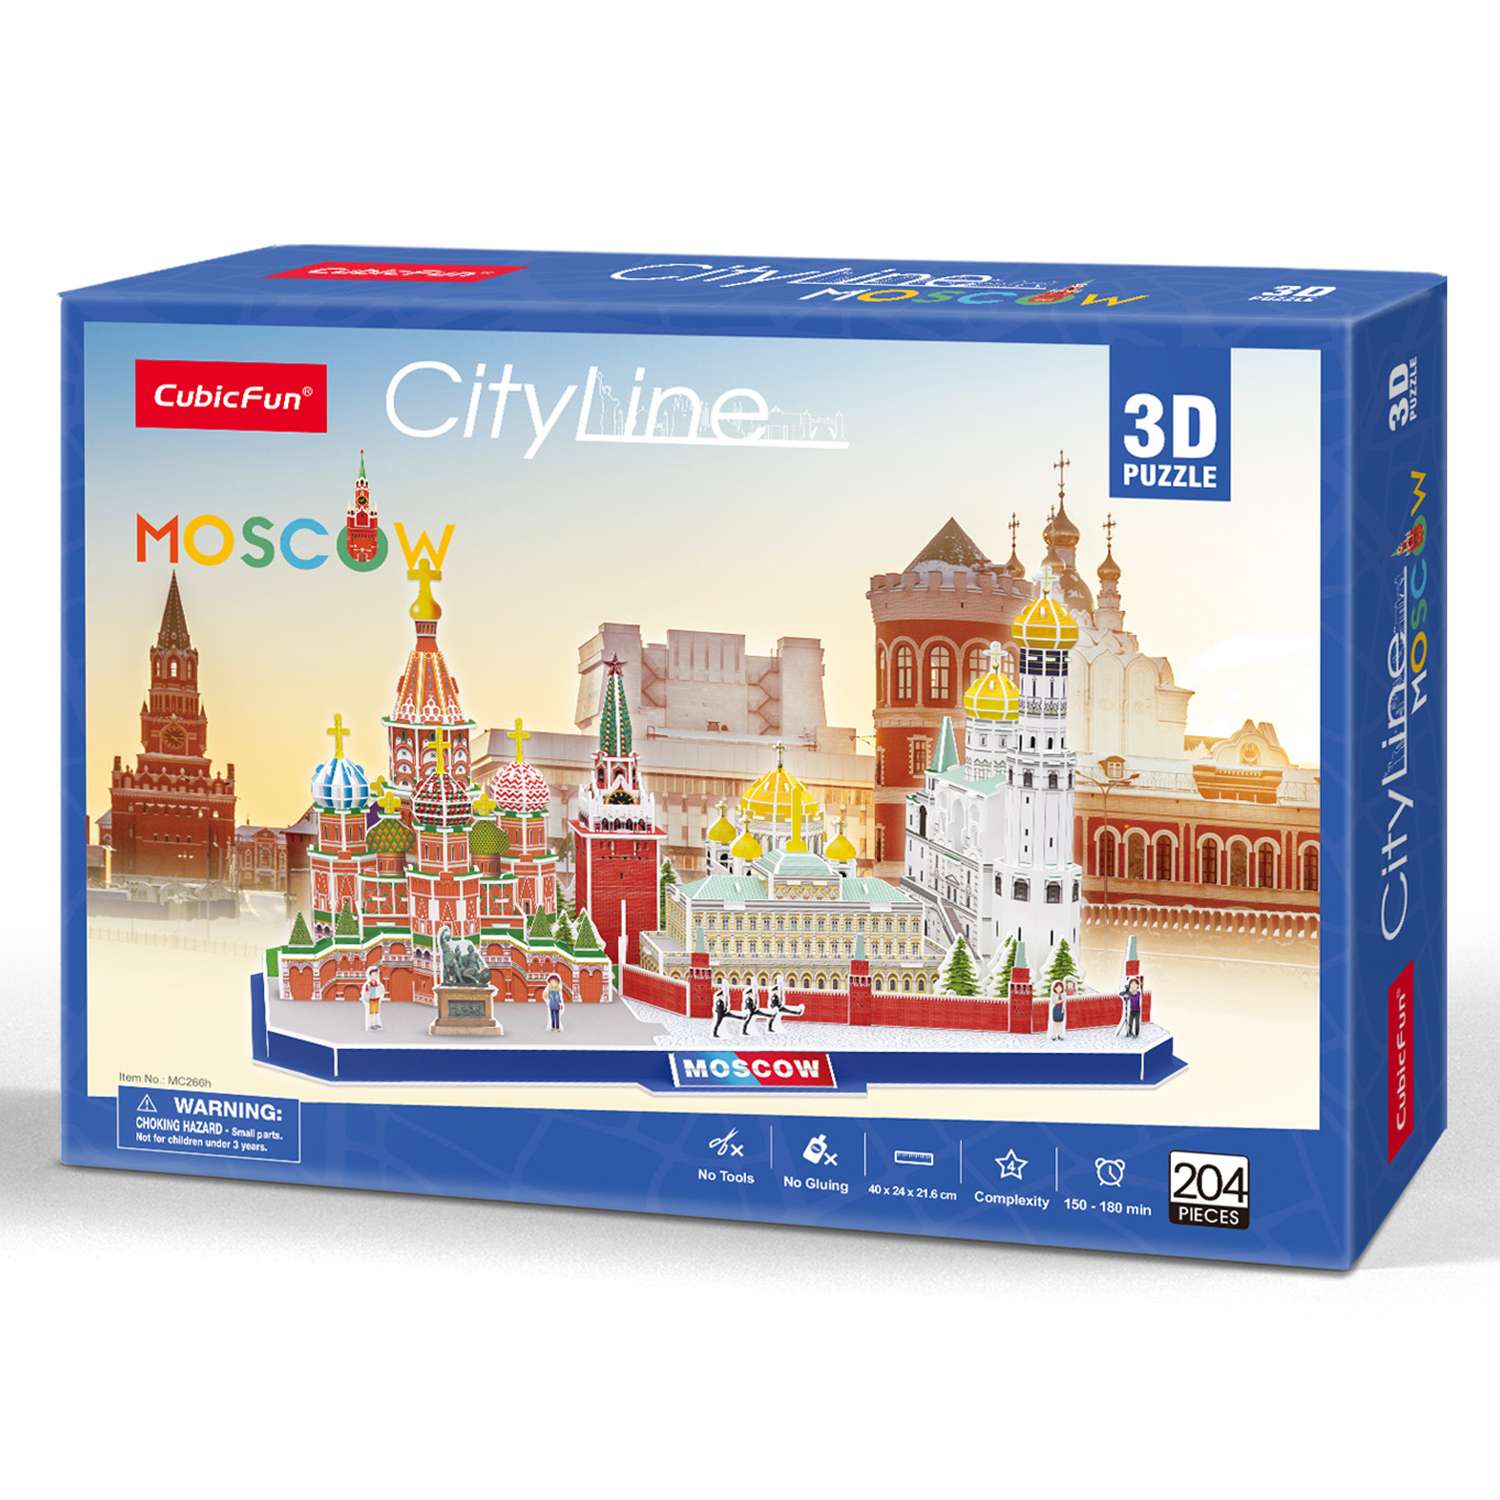 Пазл CubicFun Москва CityLine 3D 204детали MC266h - фото 2